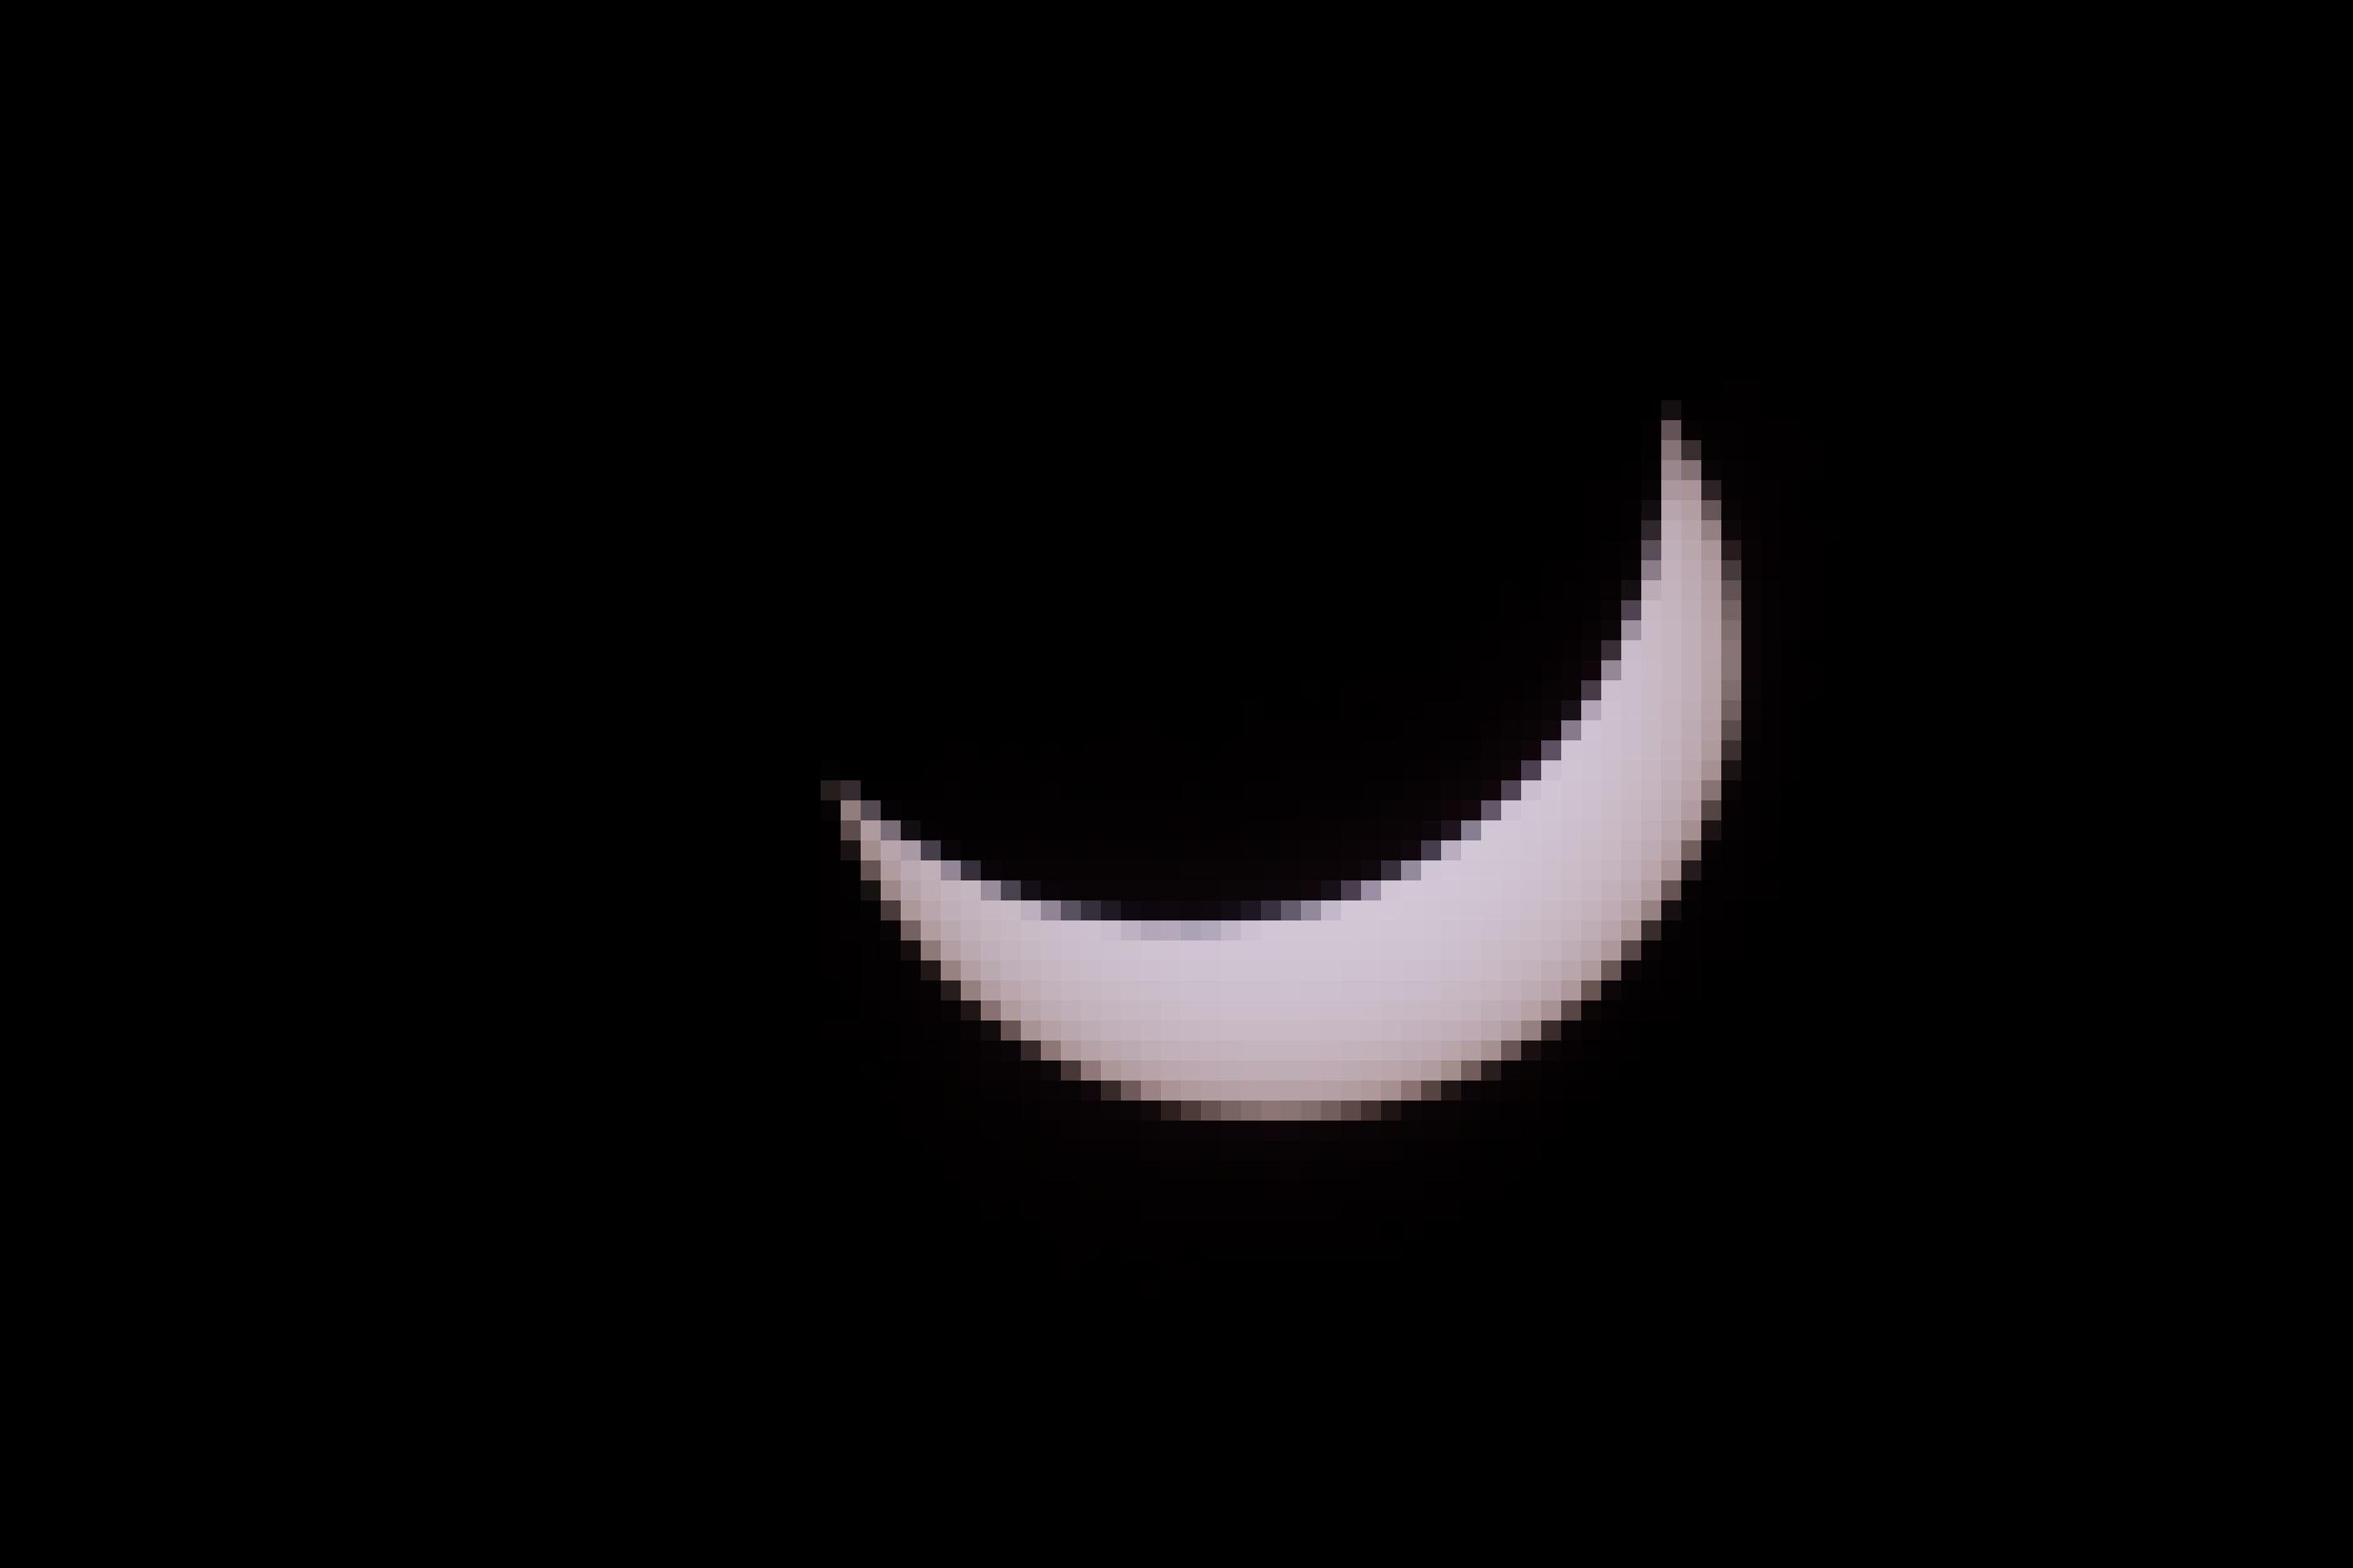 Auf dem Bild ist eine gelblich-weiße, sichelartige Sonne vor schwarzem Hintergrund zu sehen, da sie teilweise vom Mond bedeckt ist.